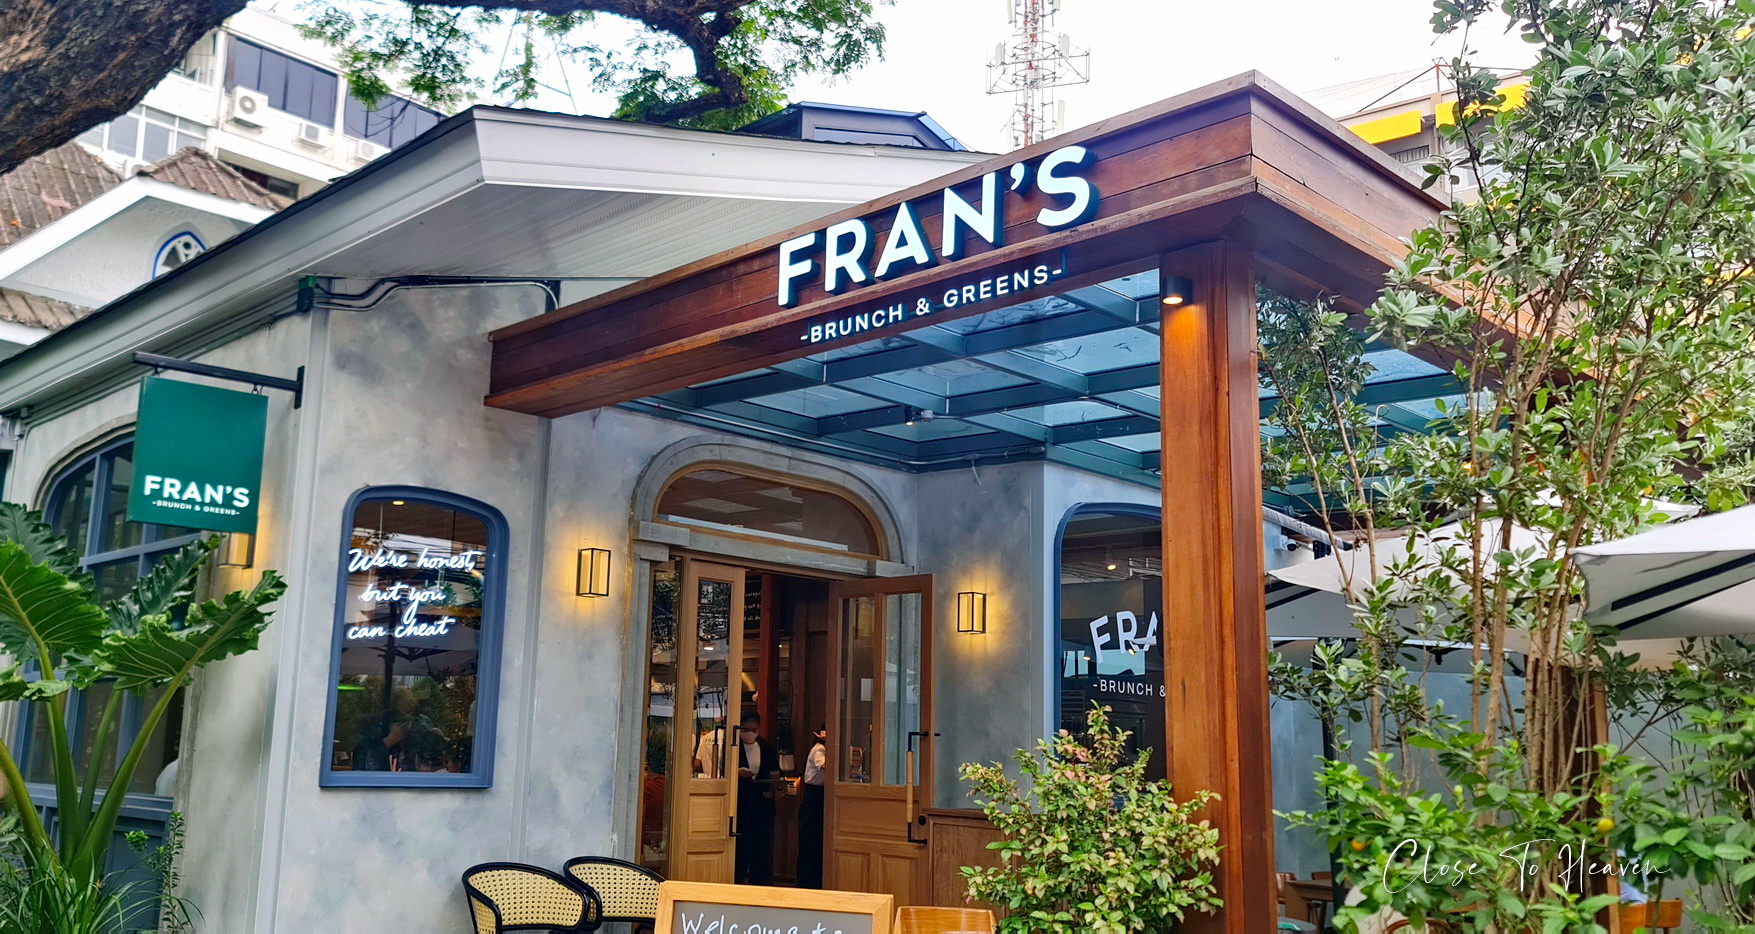 Fran's Brunch & Greens ร้านอาหารเช้าและมื้อสายยอดฮิต